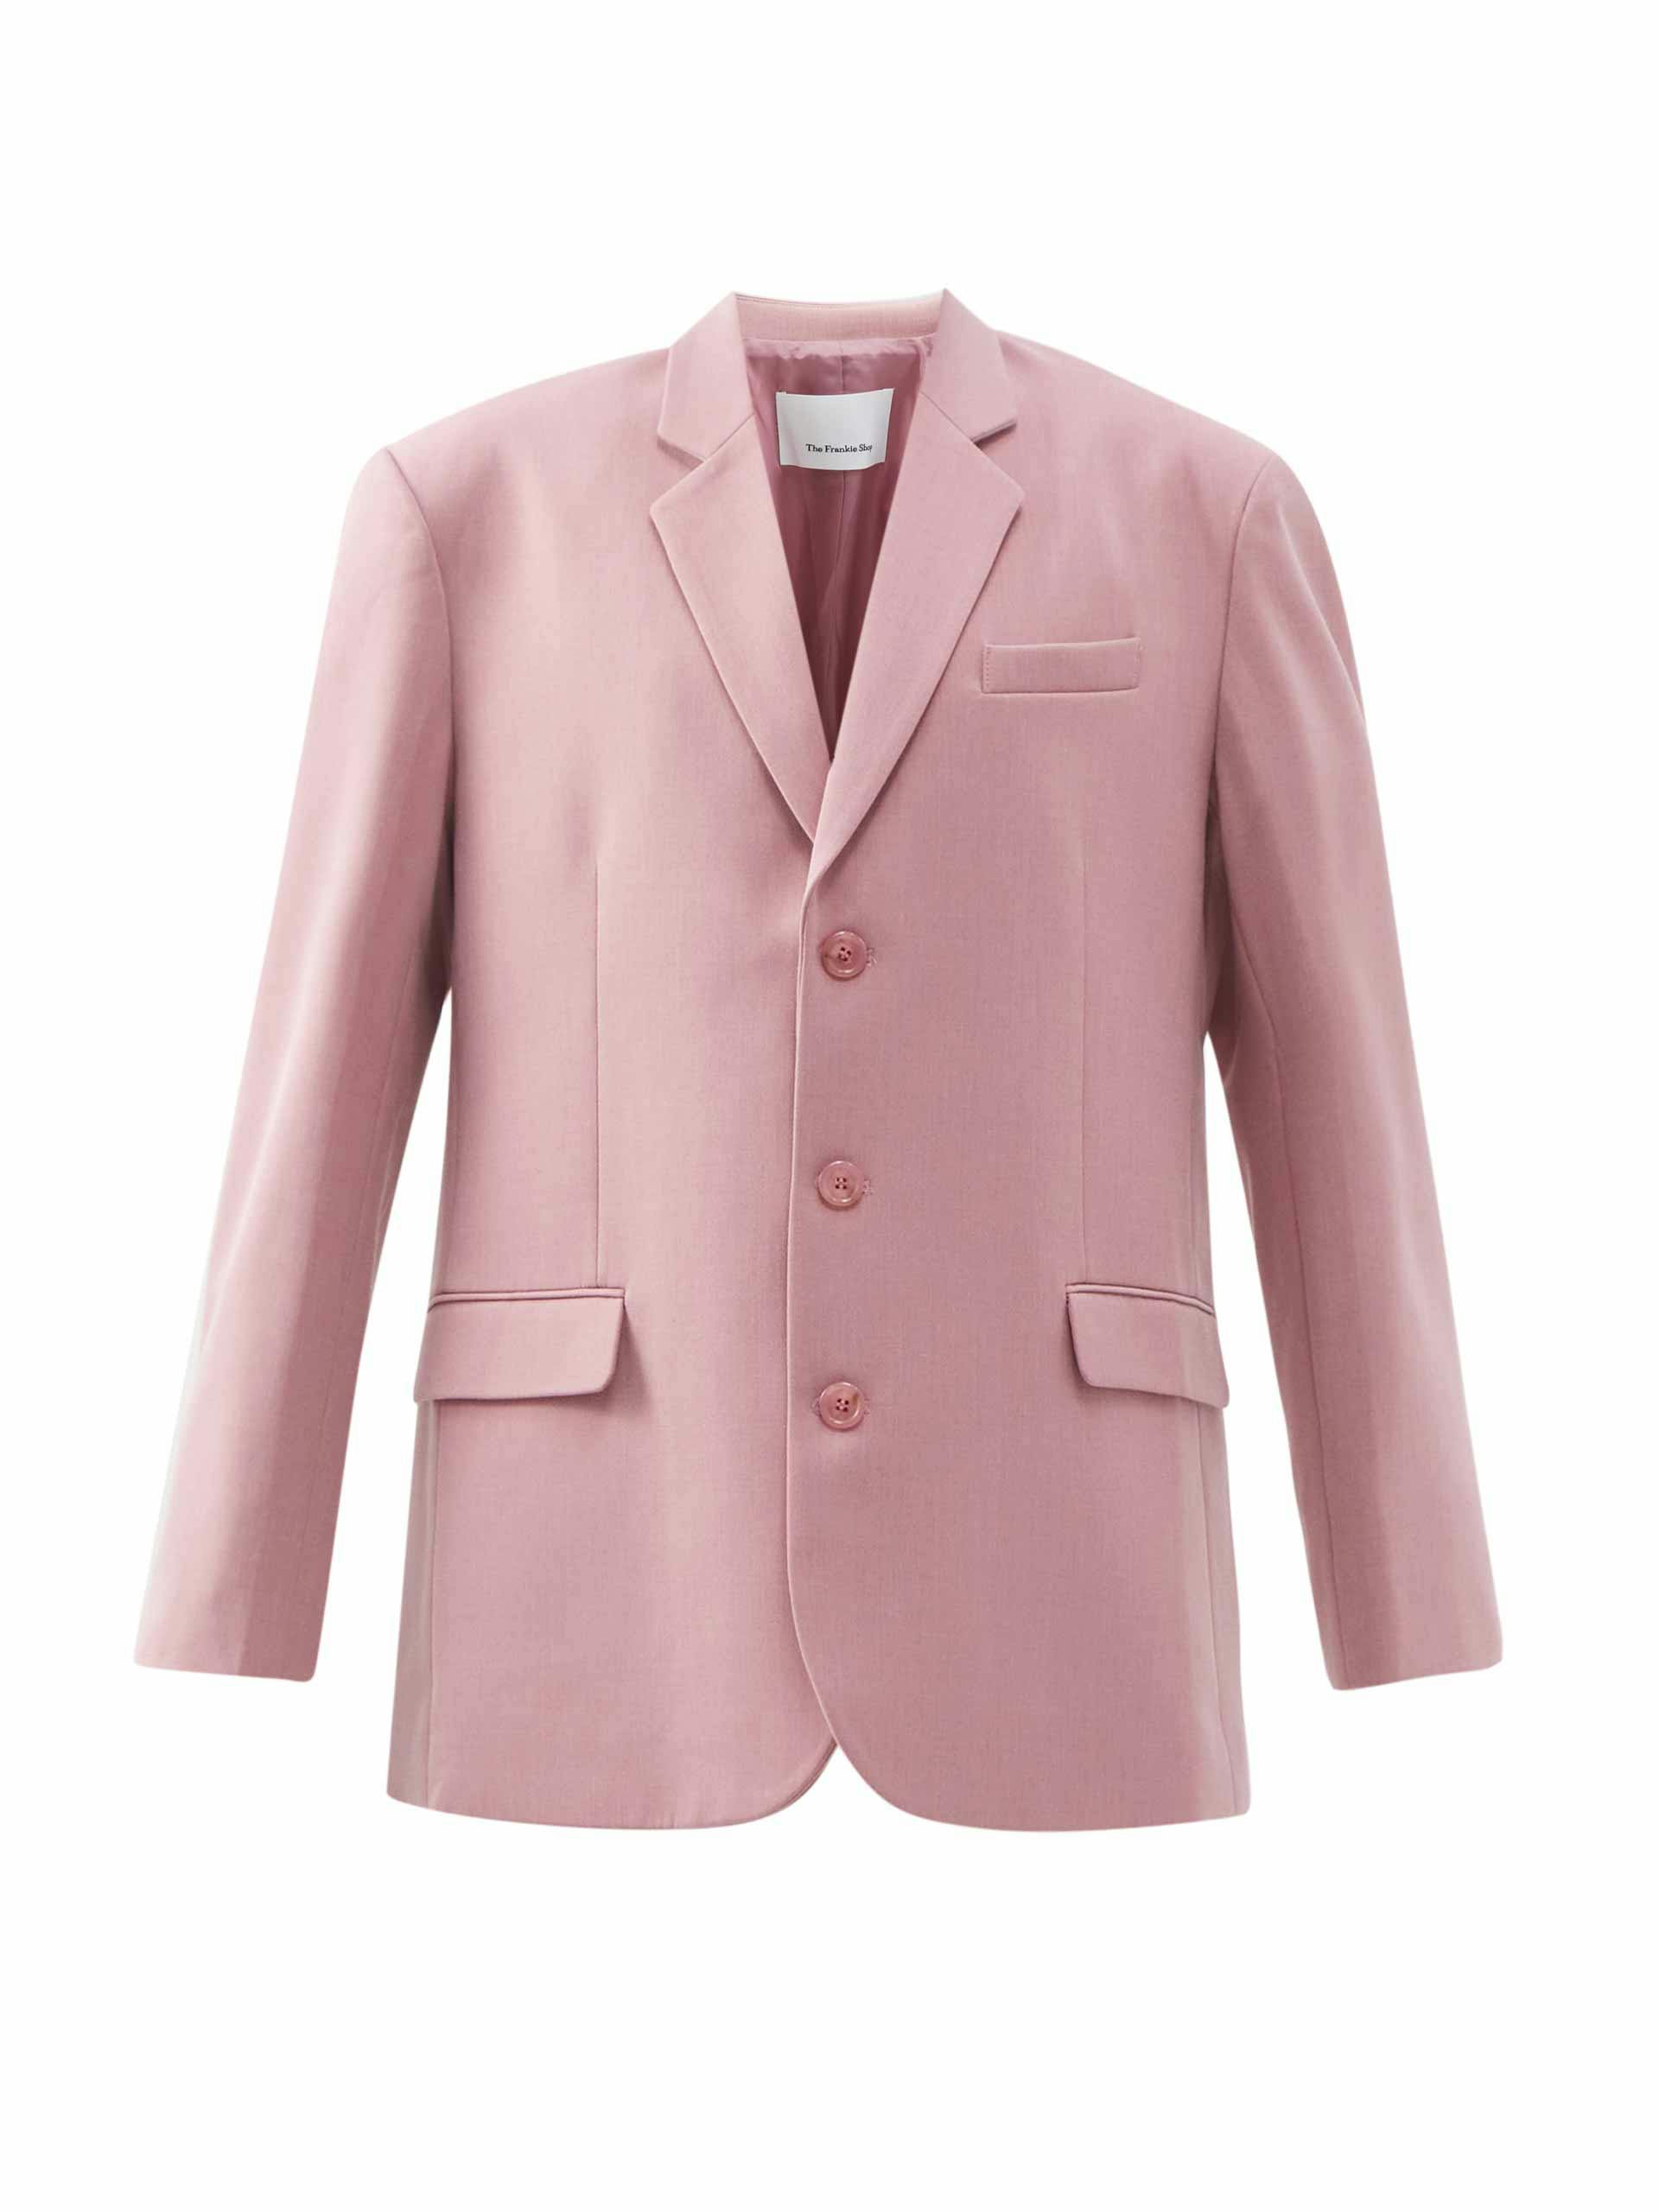 Pink blazer